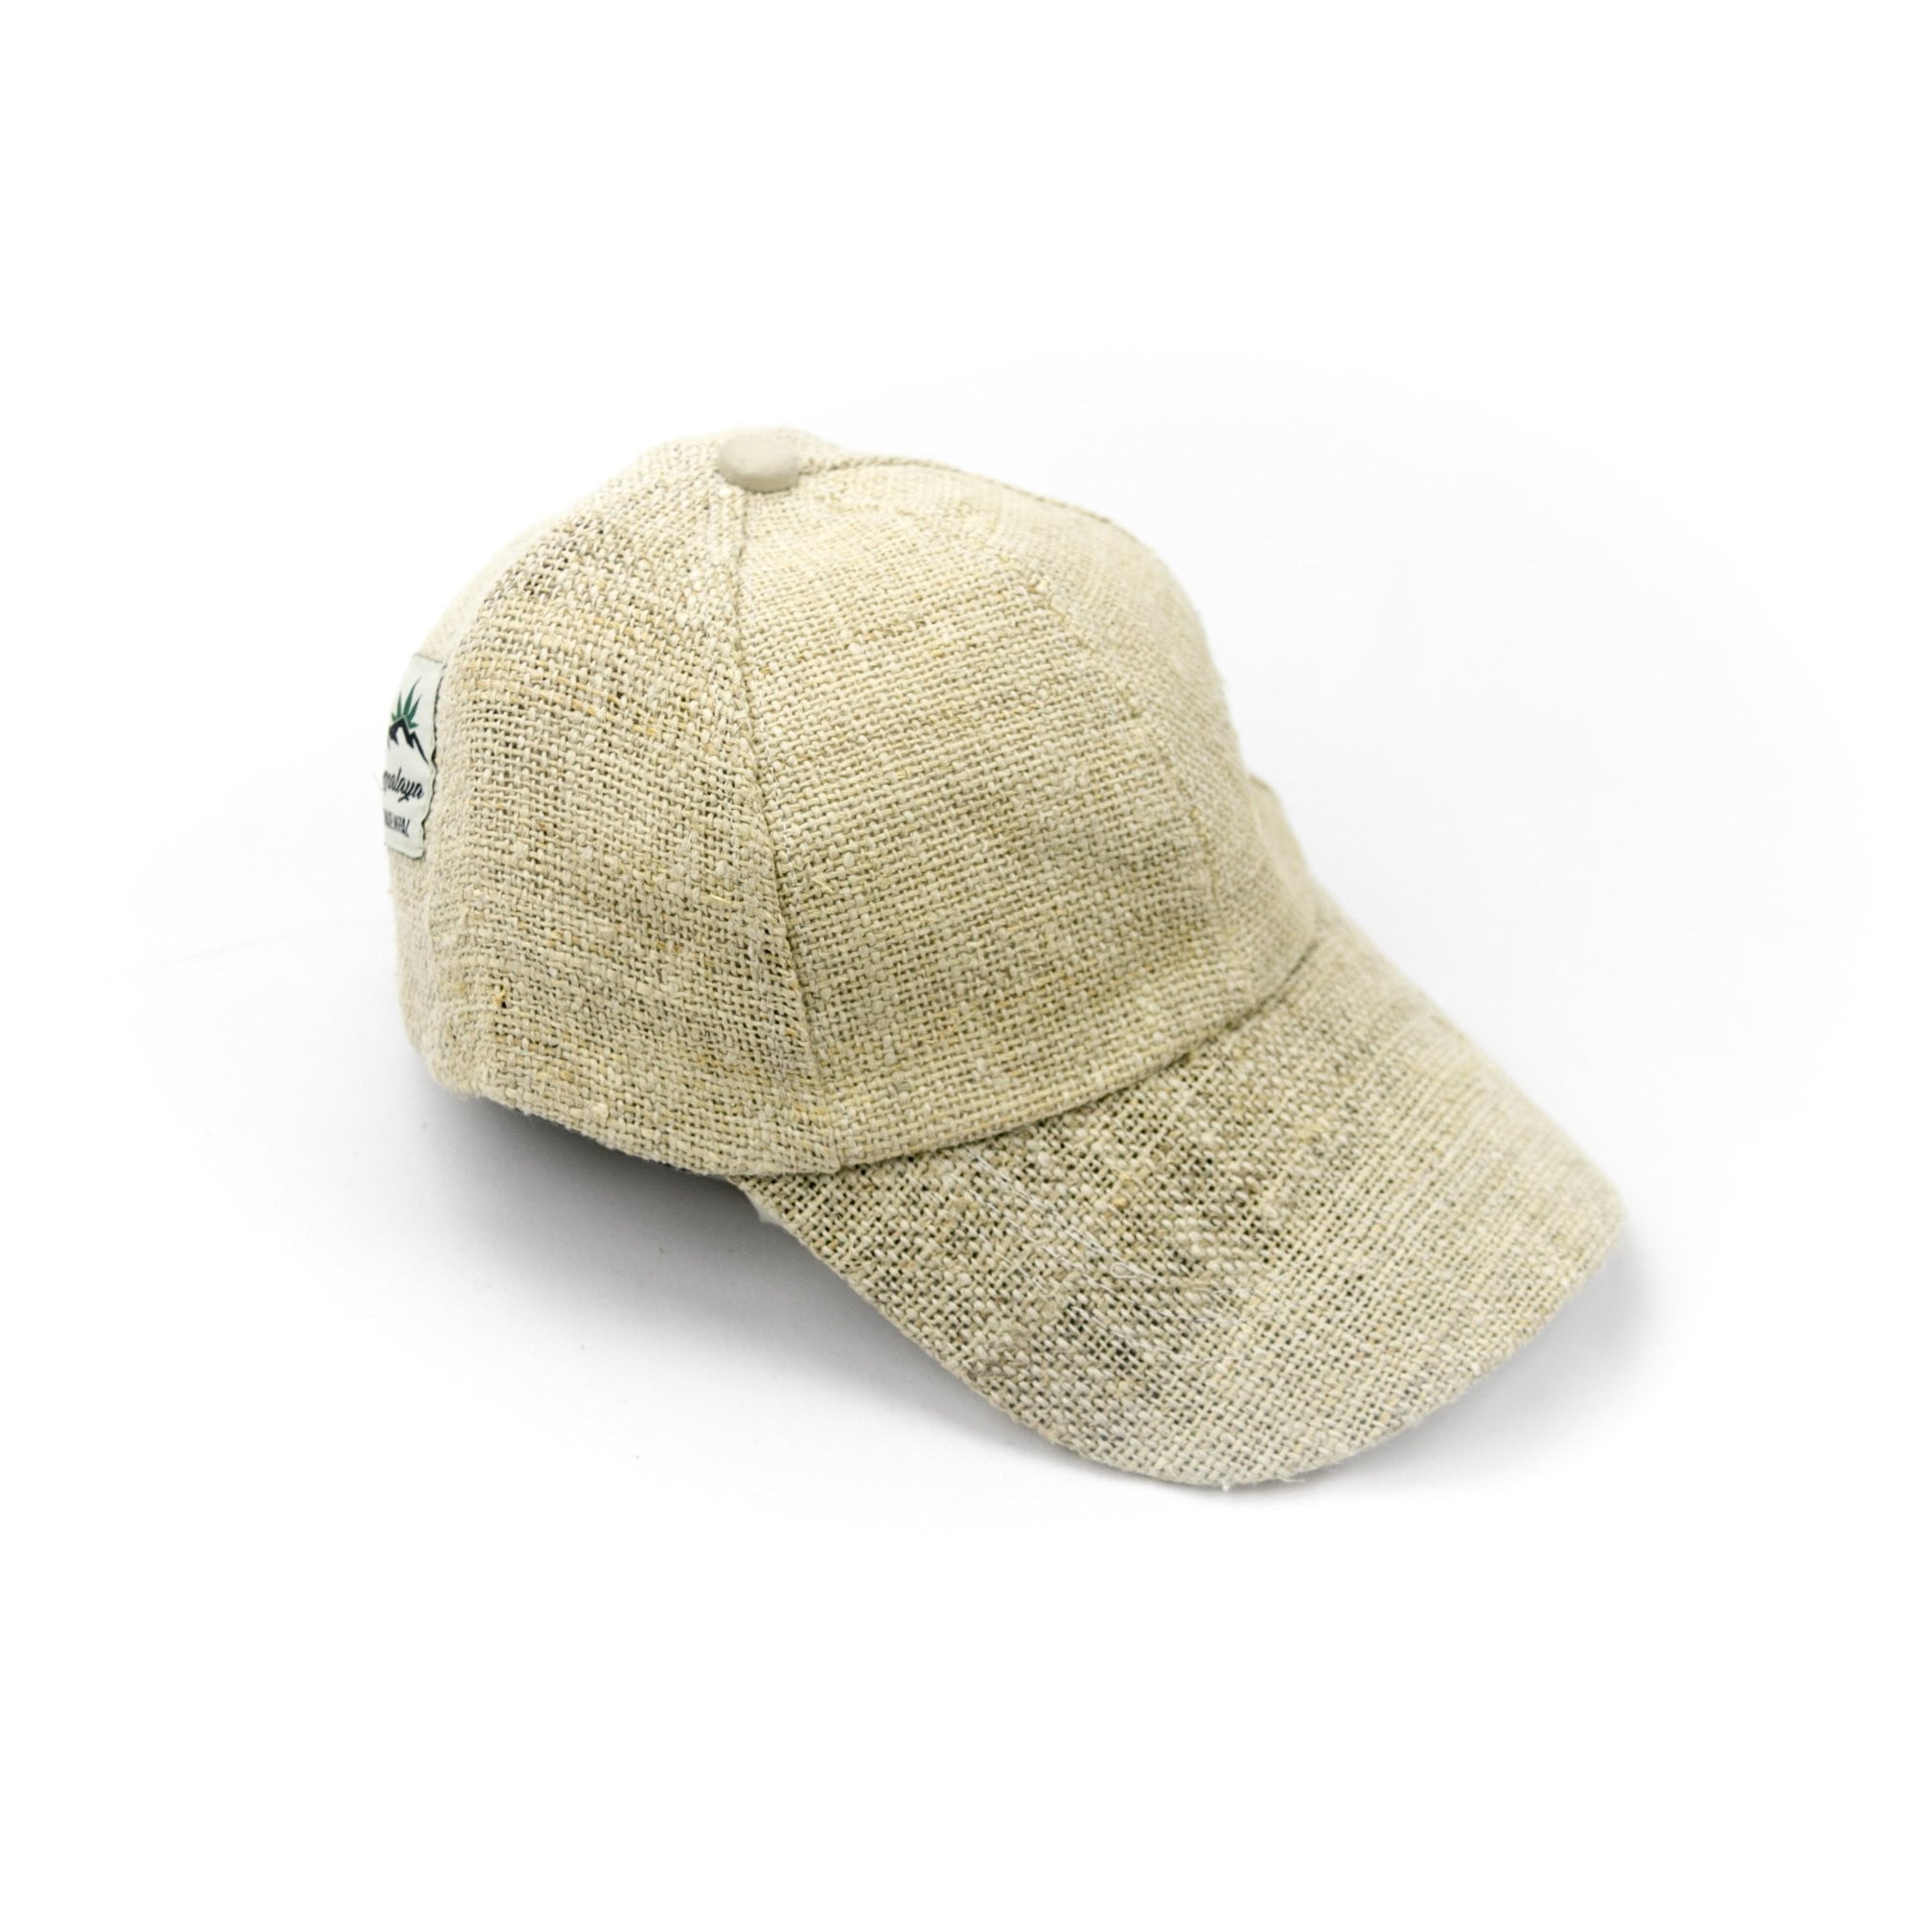 Hemp baseball cap - Hempalaya